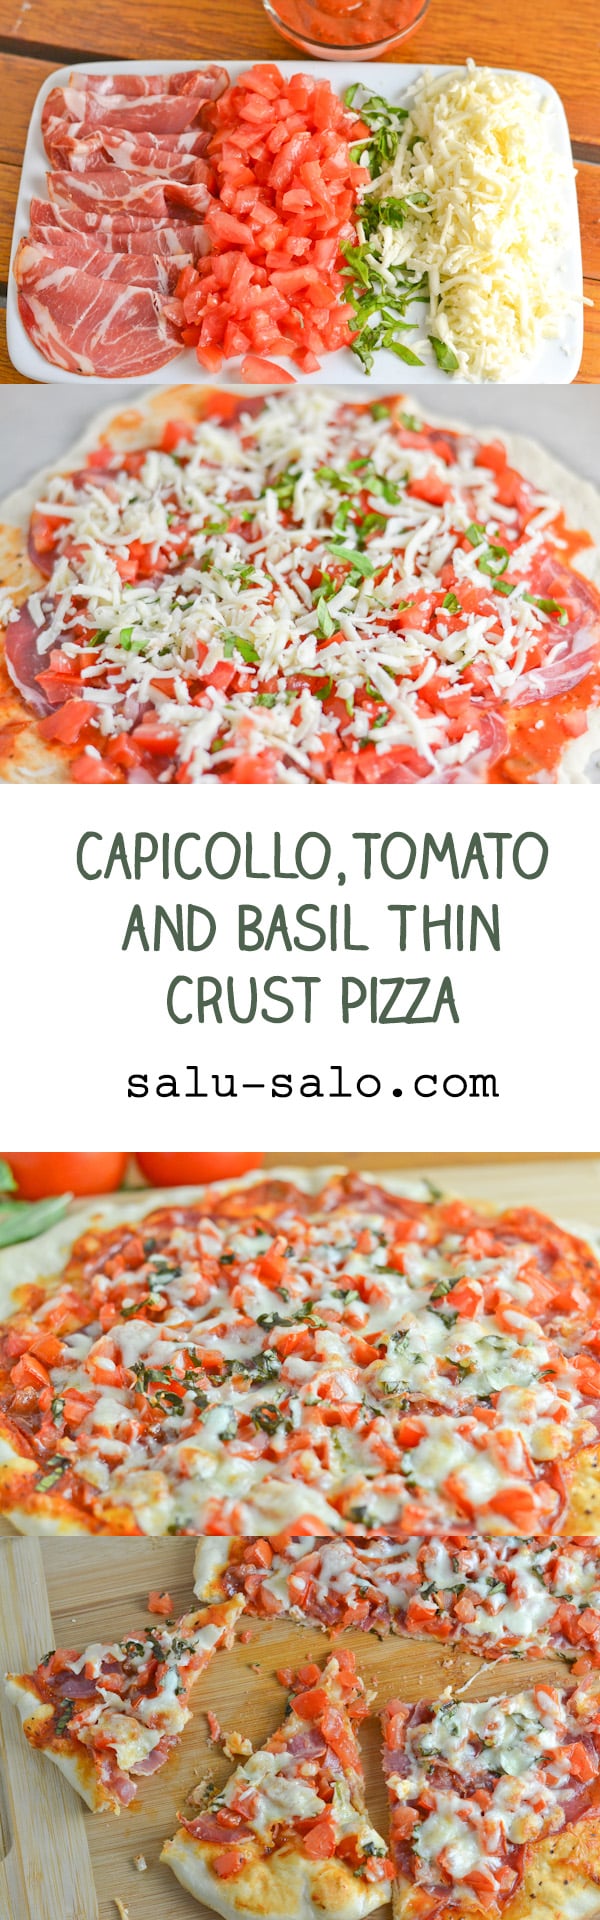 Capicollo, Tomato and Basil Thin Crust Pizza